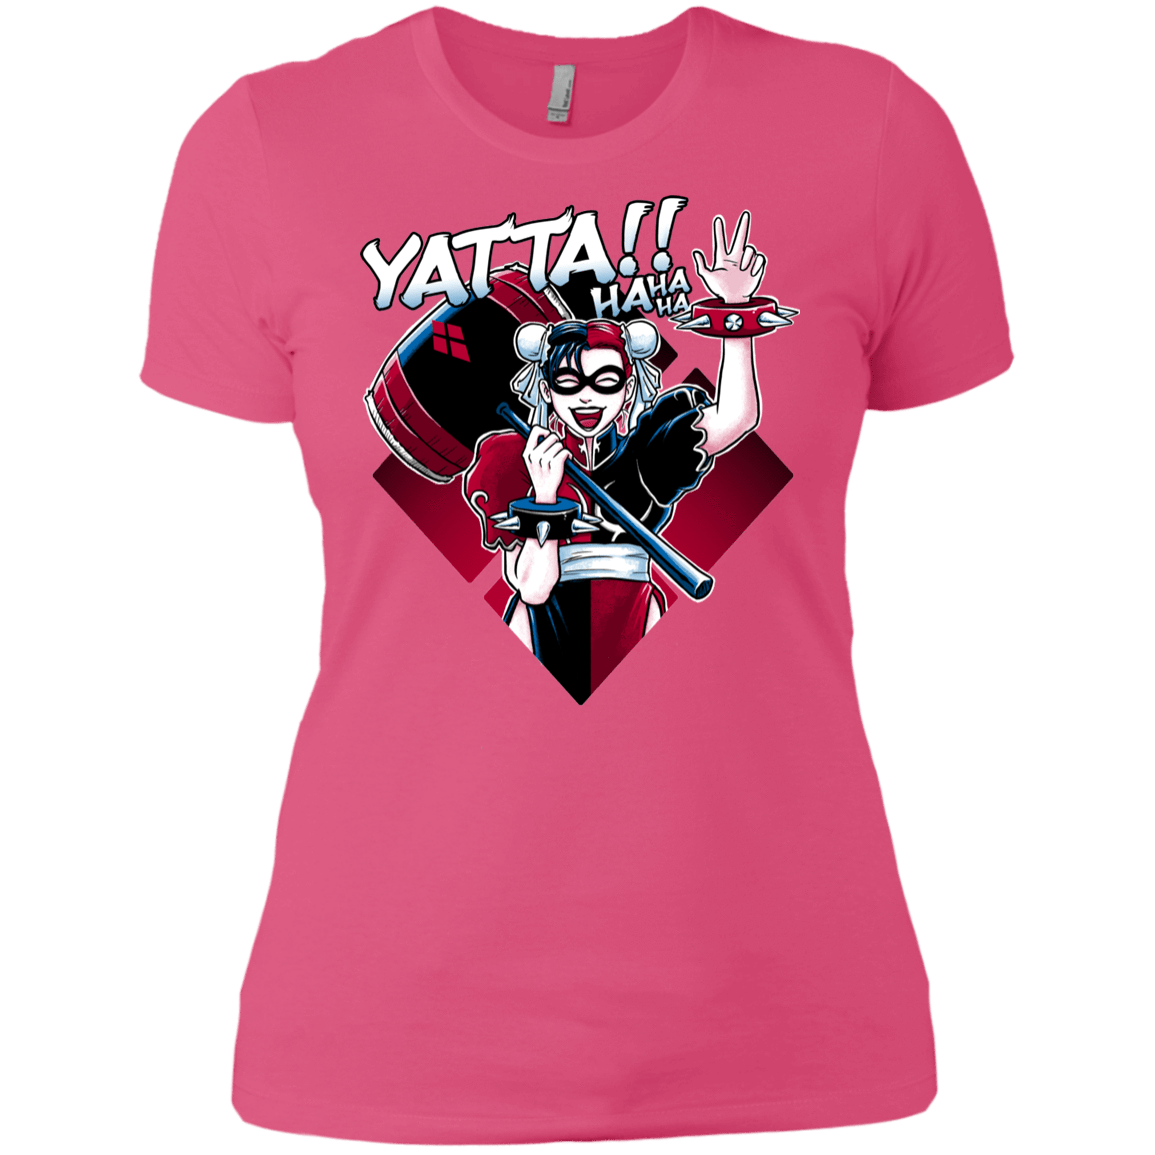 T-Shirts Hot Pink / X-Small Harley Yatta Women's Premium T-Shirt